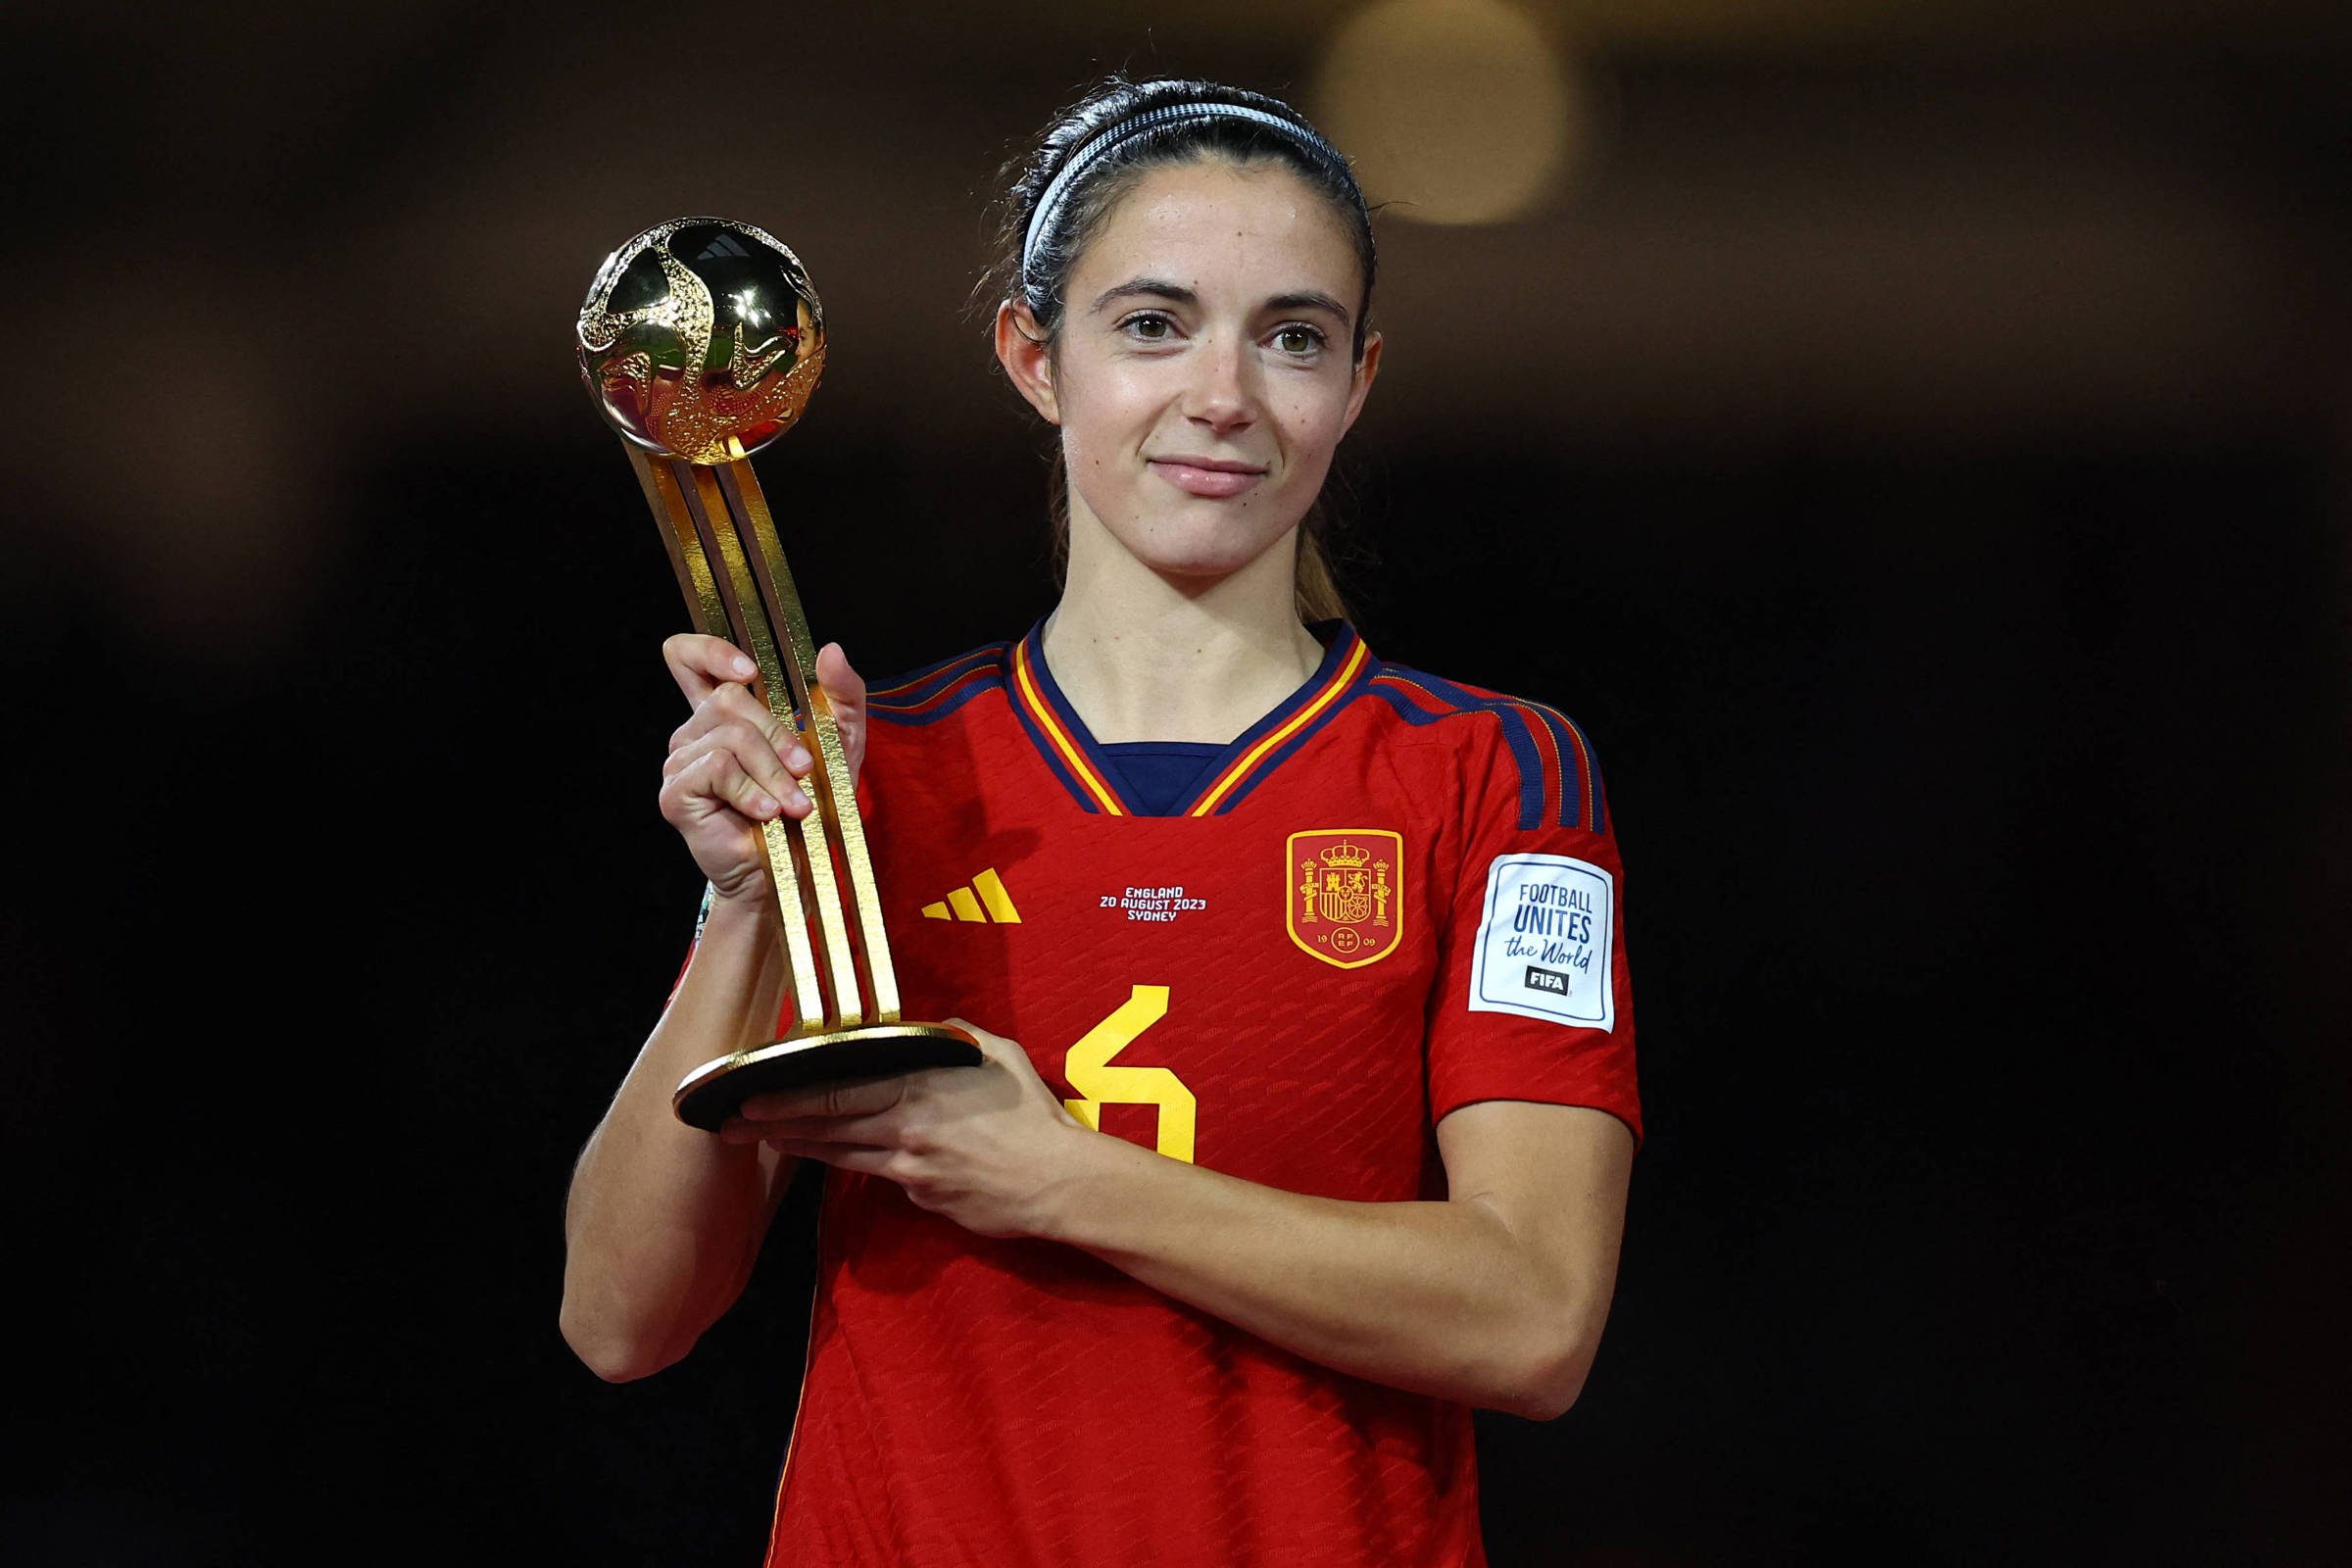 Aitana Bonmatí vence prémio de melhor jogadora do Mundial de